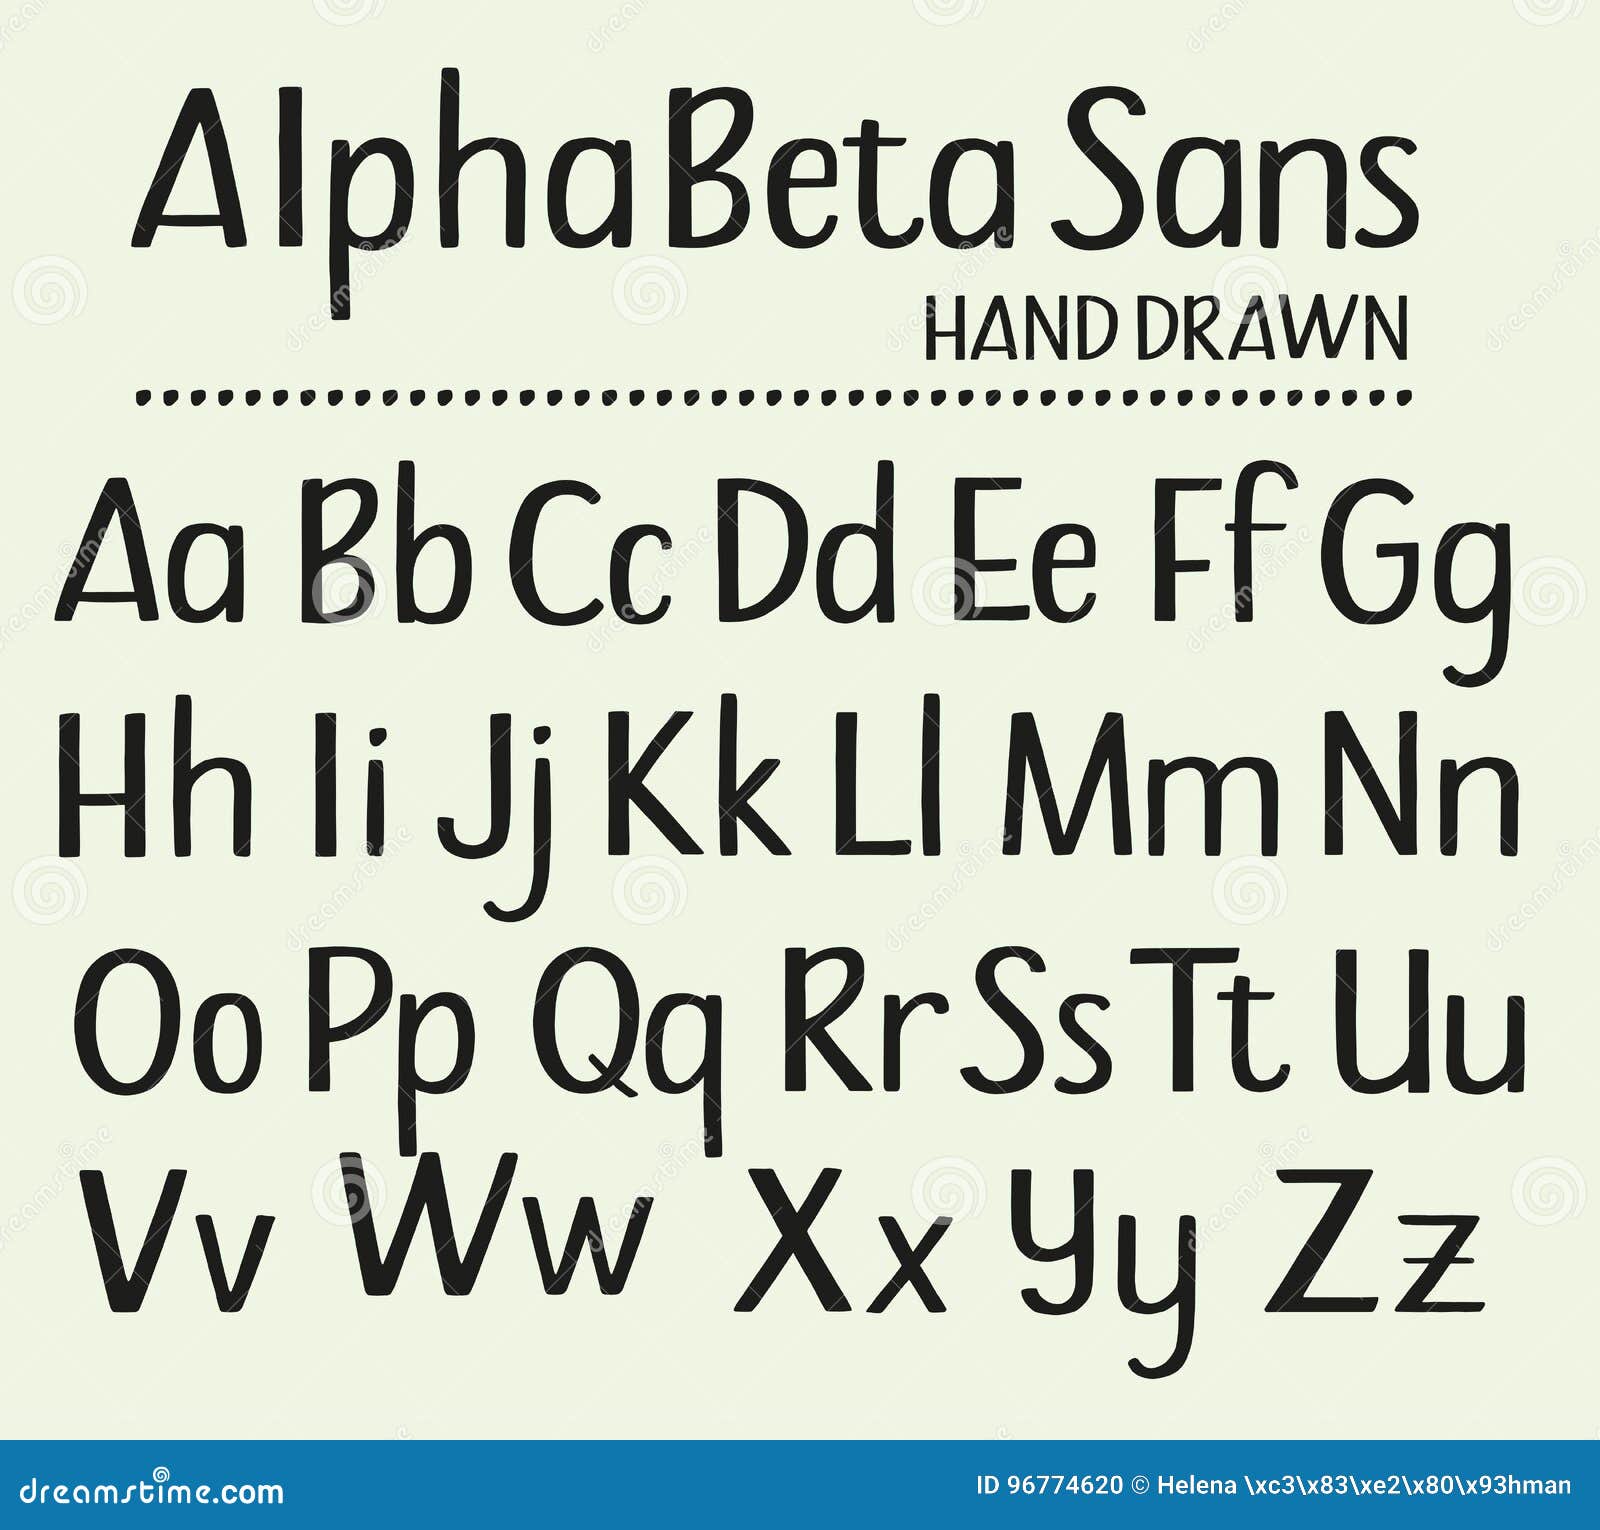 hand drawn sans serifs alphabet